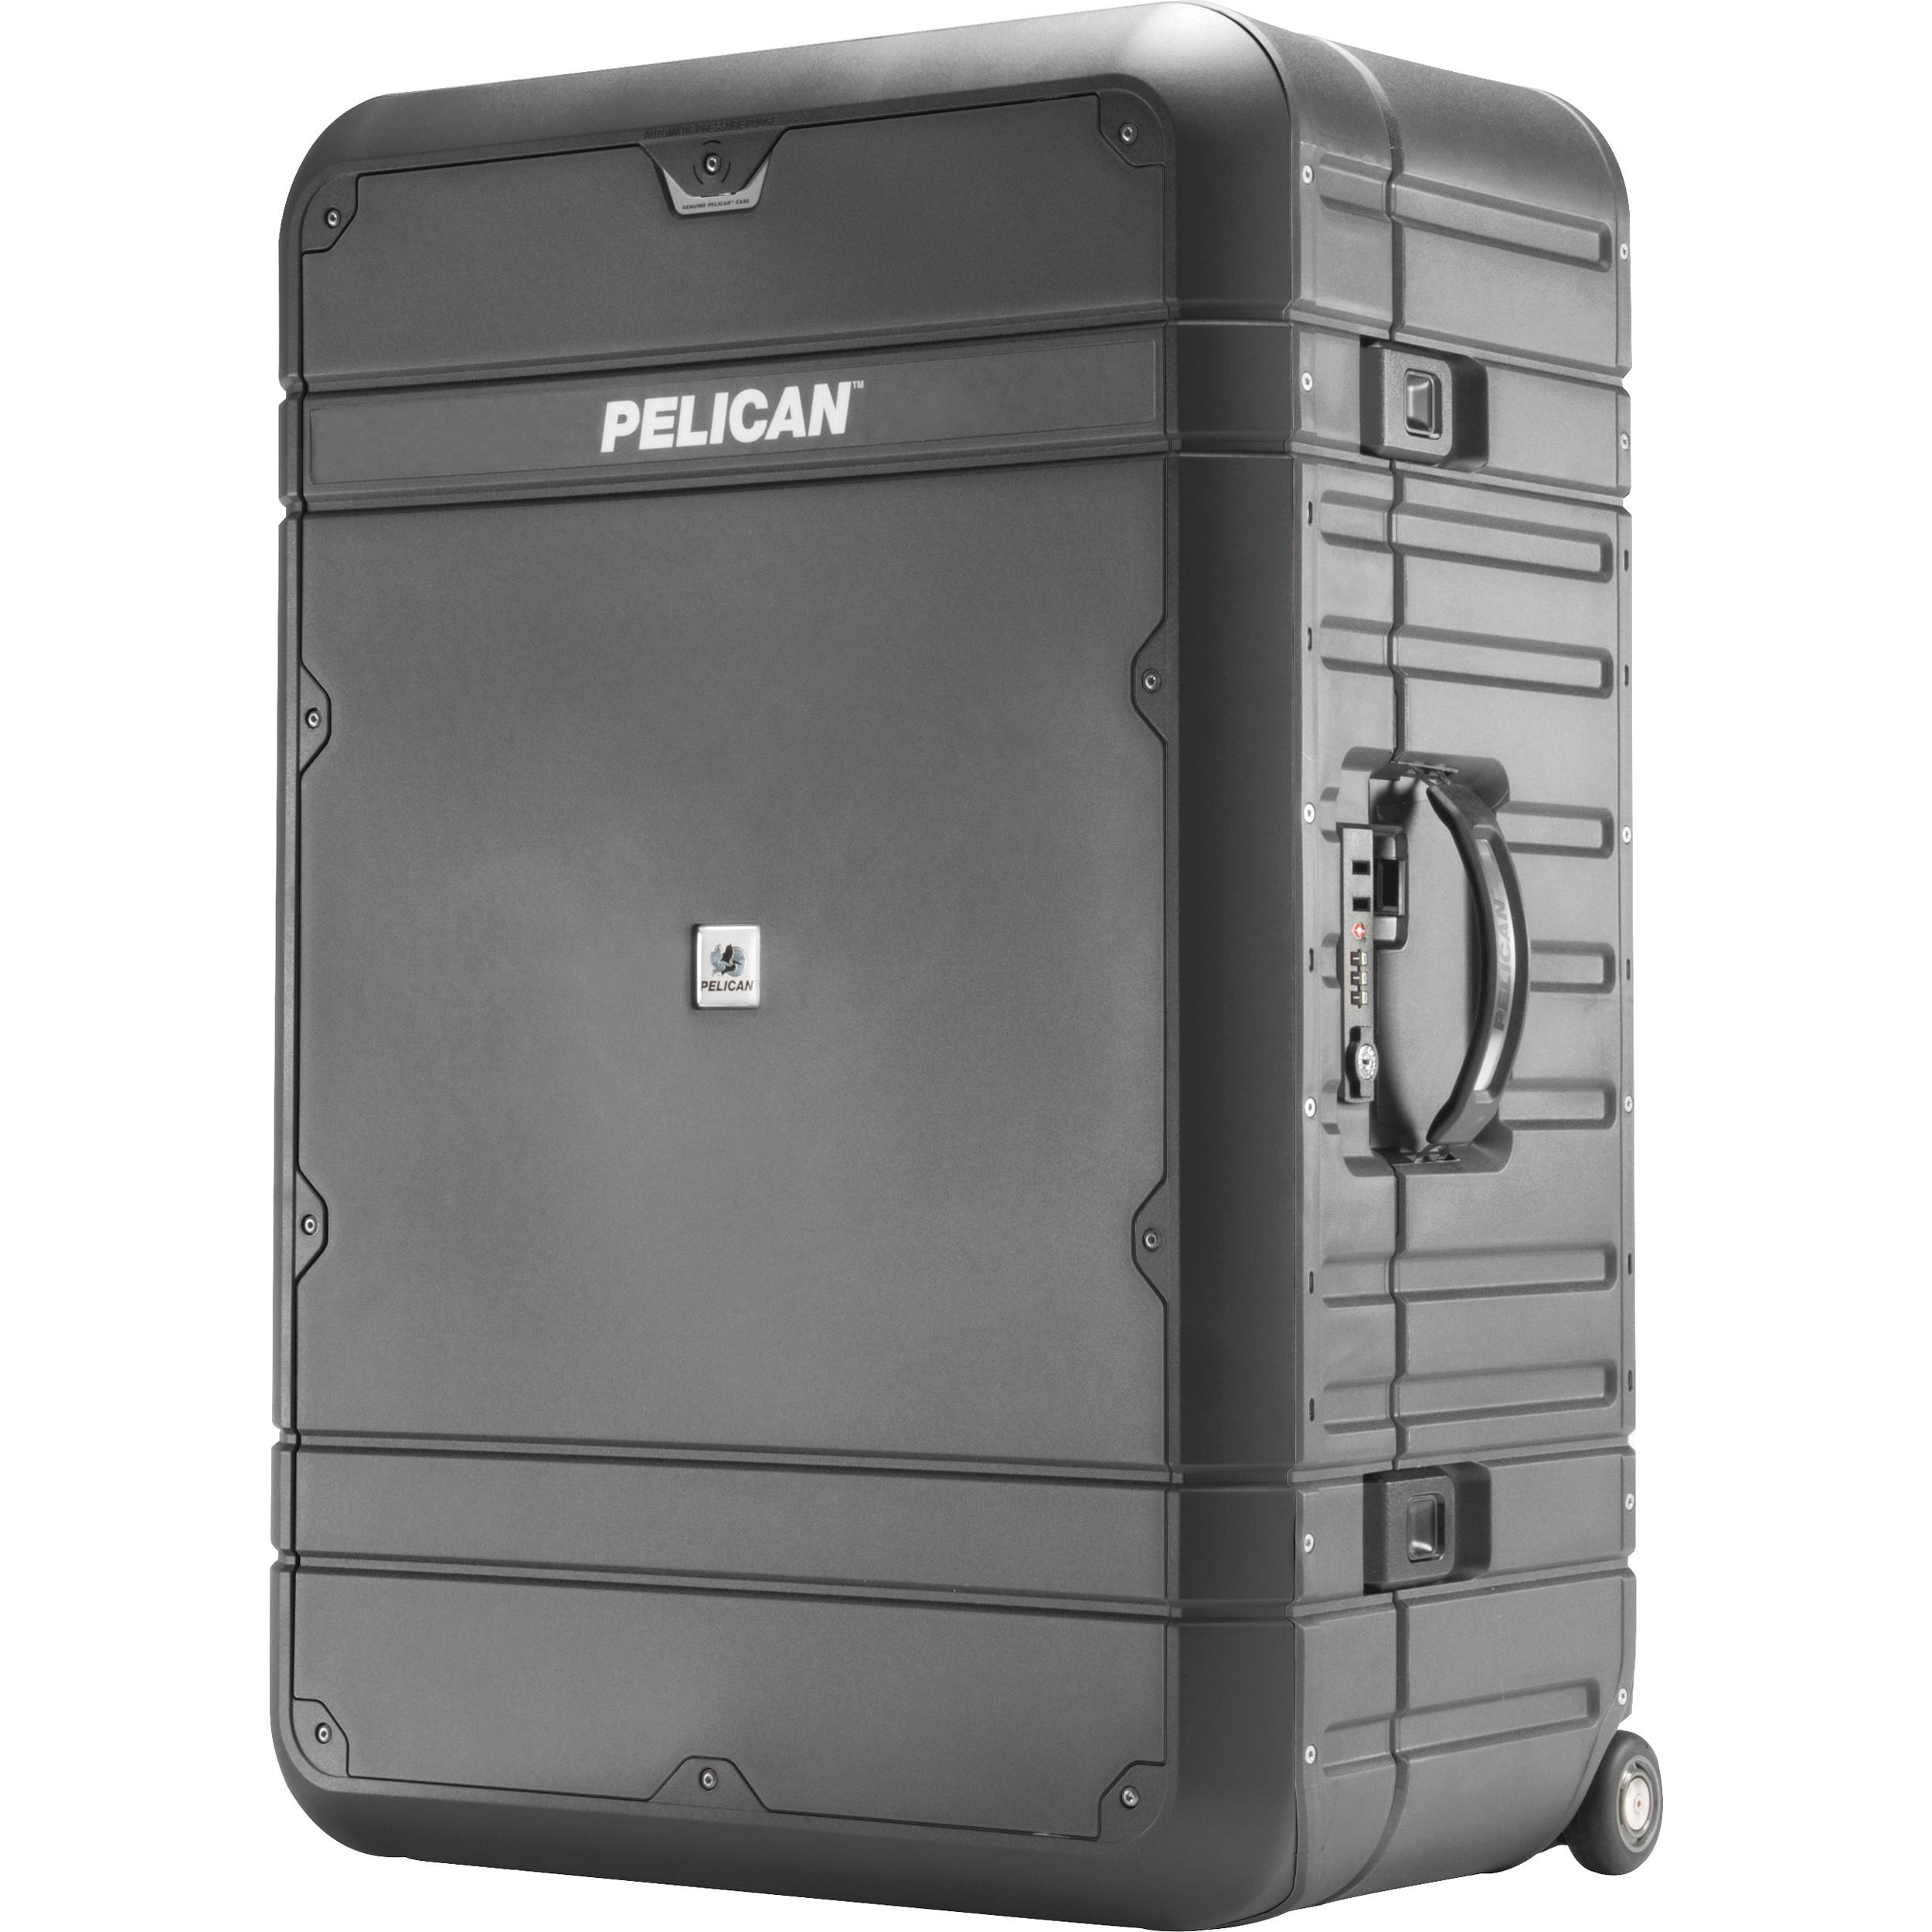 Pelican 30" Elite Vacationer Luggage (Grey and Black)